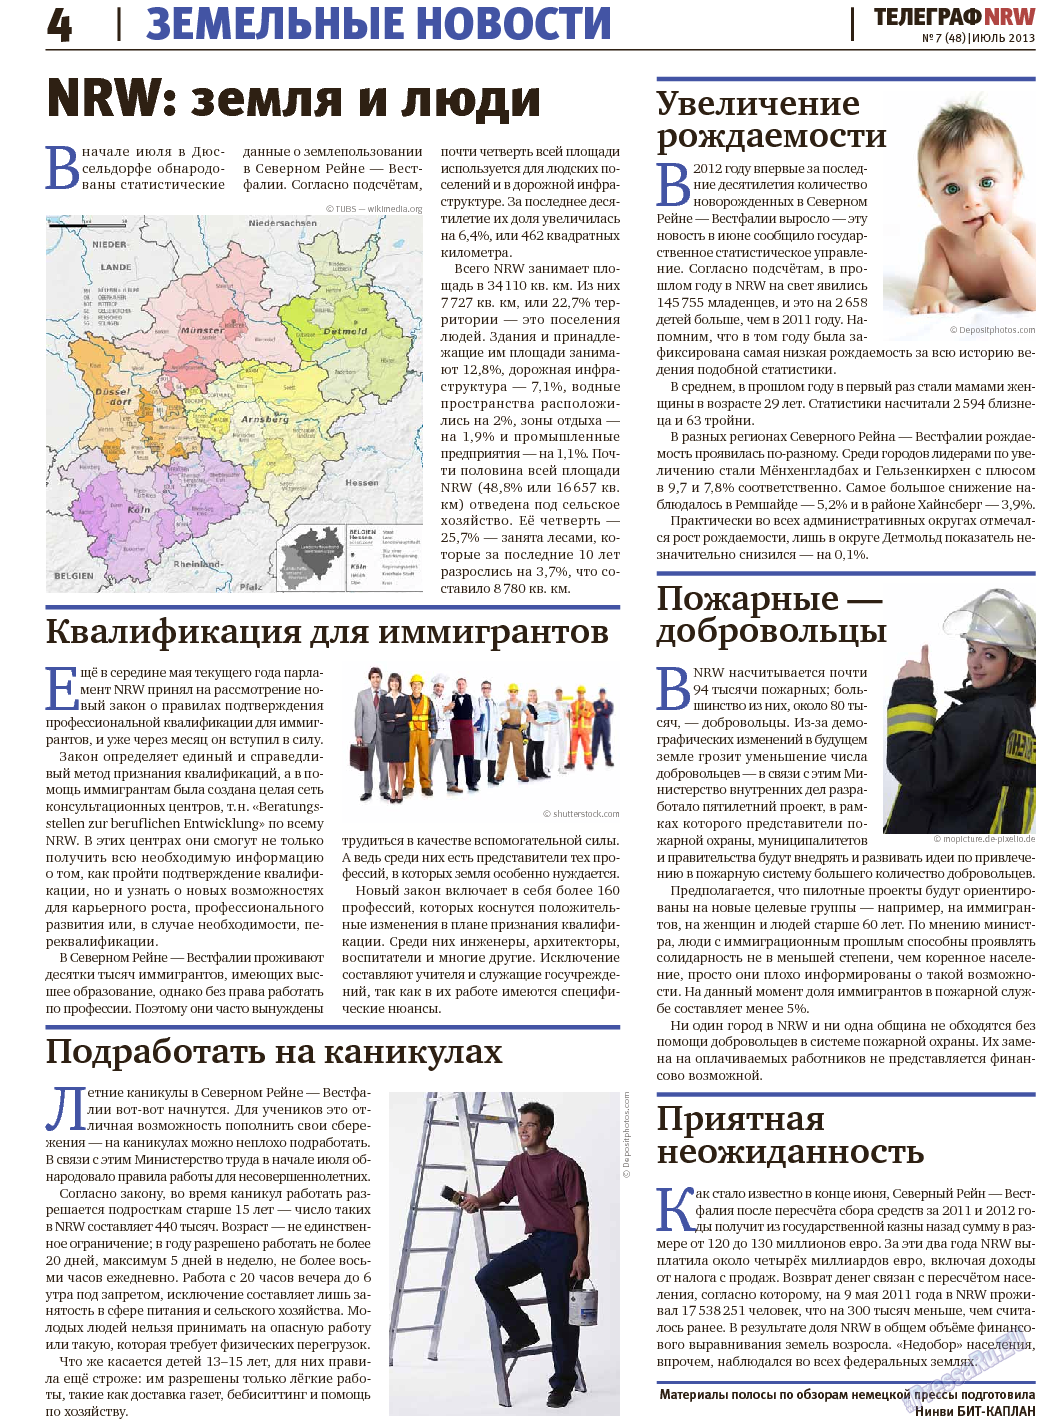 Телеграф NRW (газета). 2013 год, номер 7, стр. 4